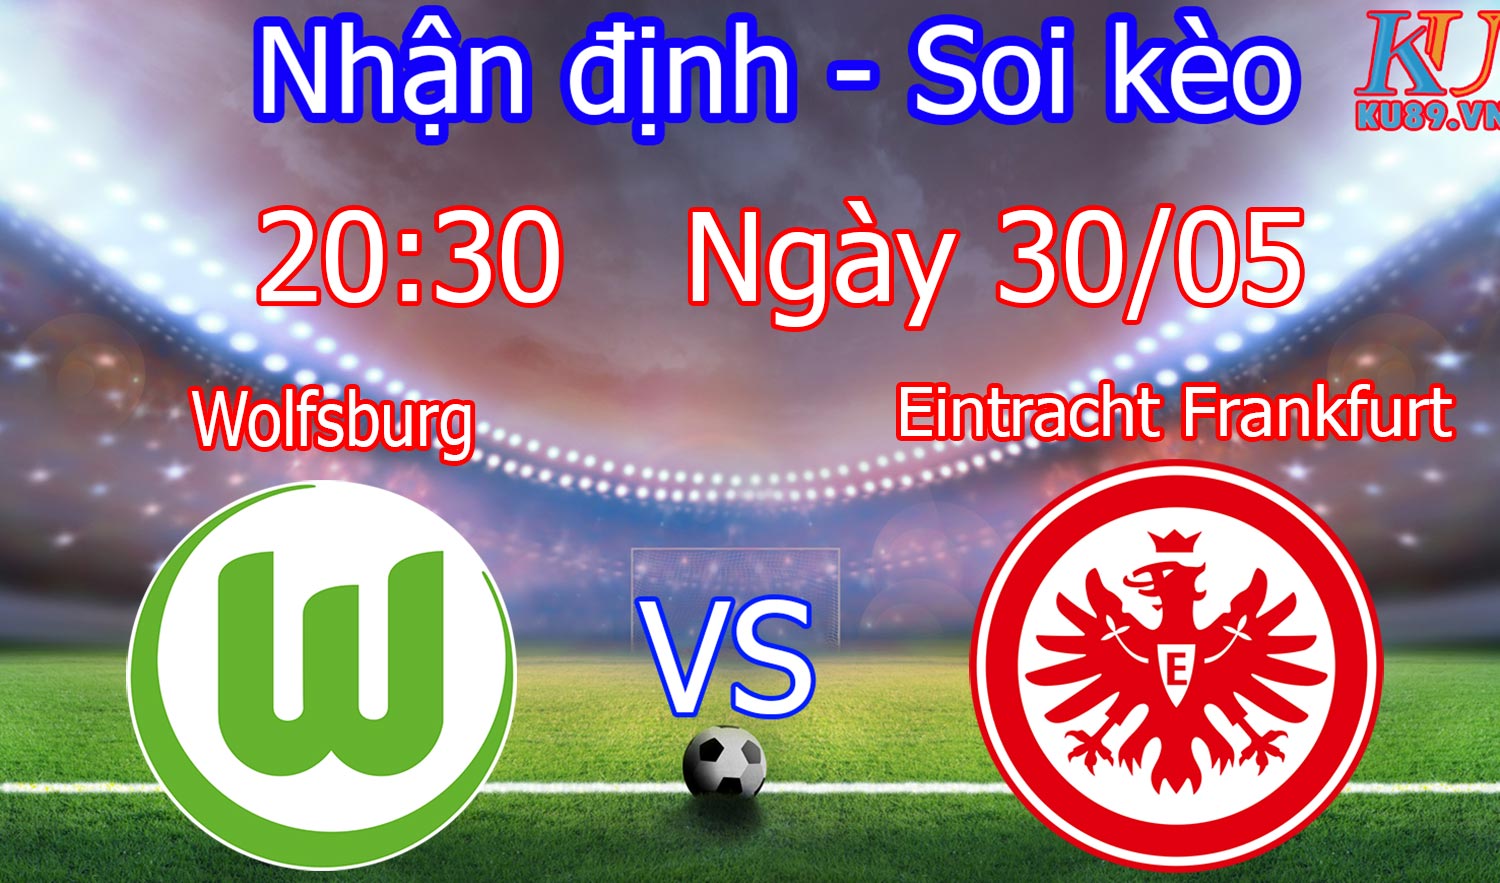 BD Wolfsburg – Eintracht Frankfurt